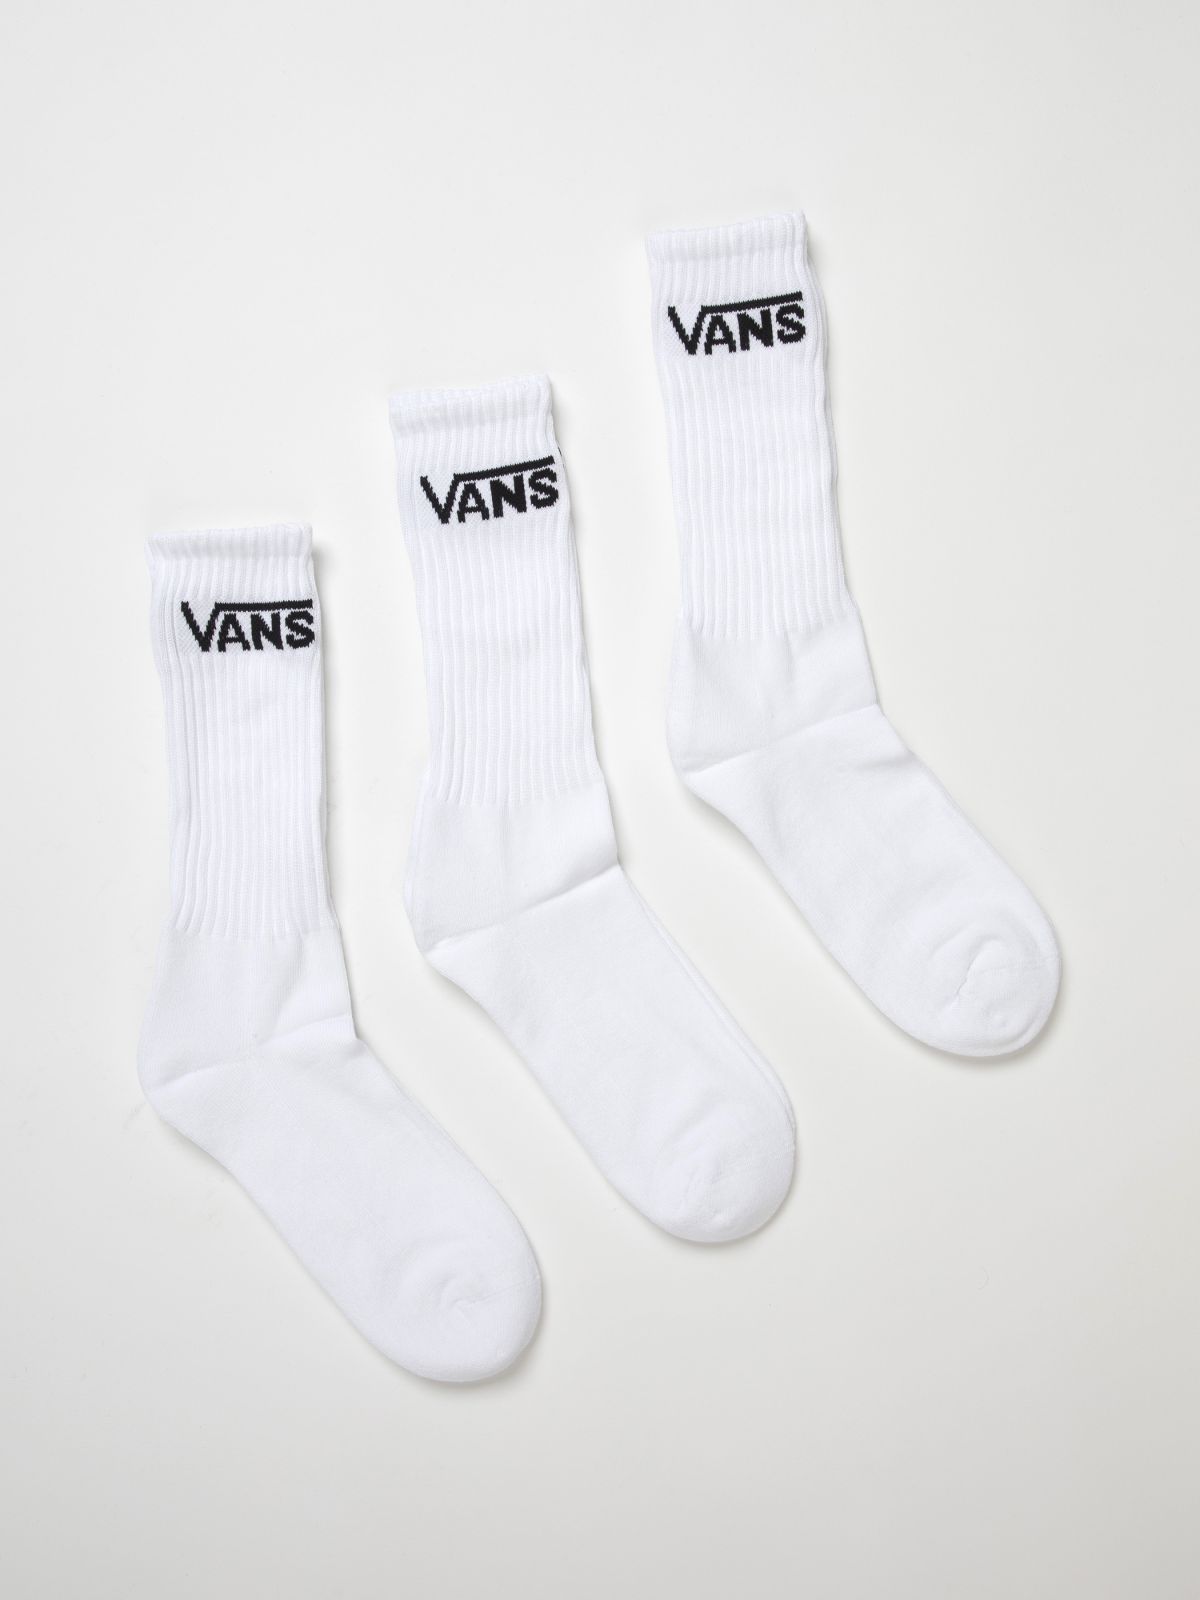  מארז 3 זוגות גרביים גבוהים עם לוגו / גרביים של VANS